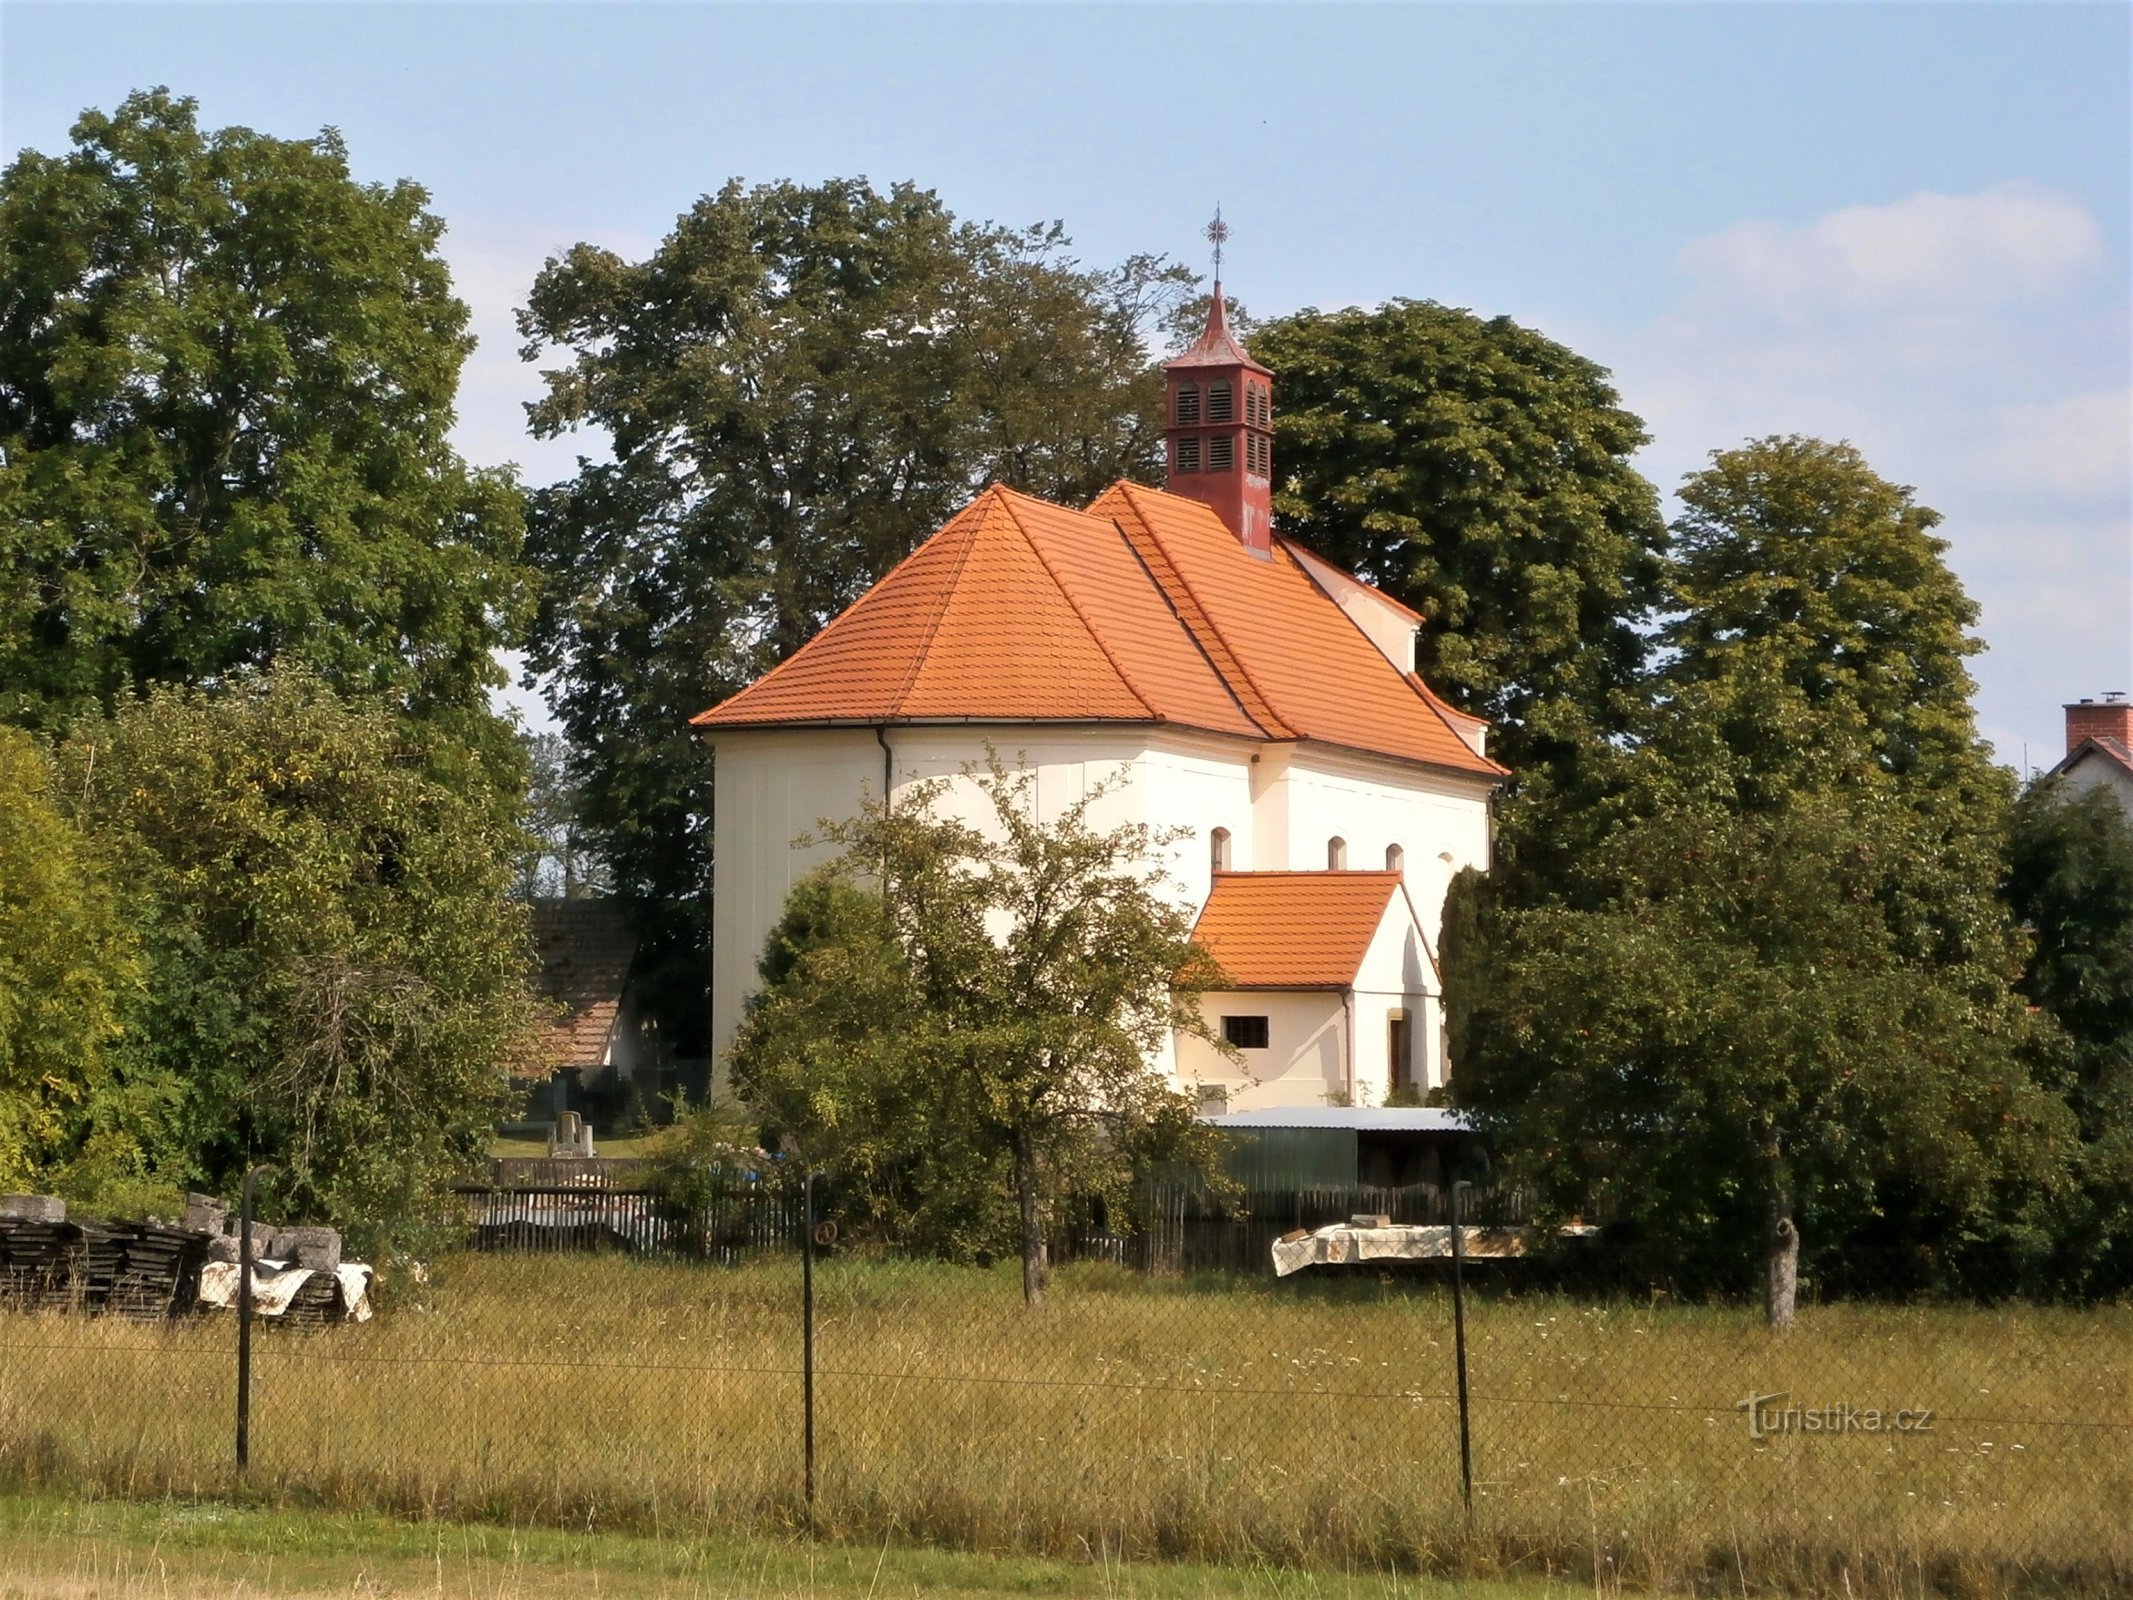 Crkva Uznesenja Djevice Marije (Krňovice)